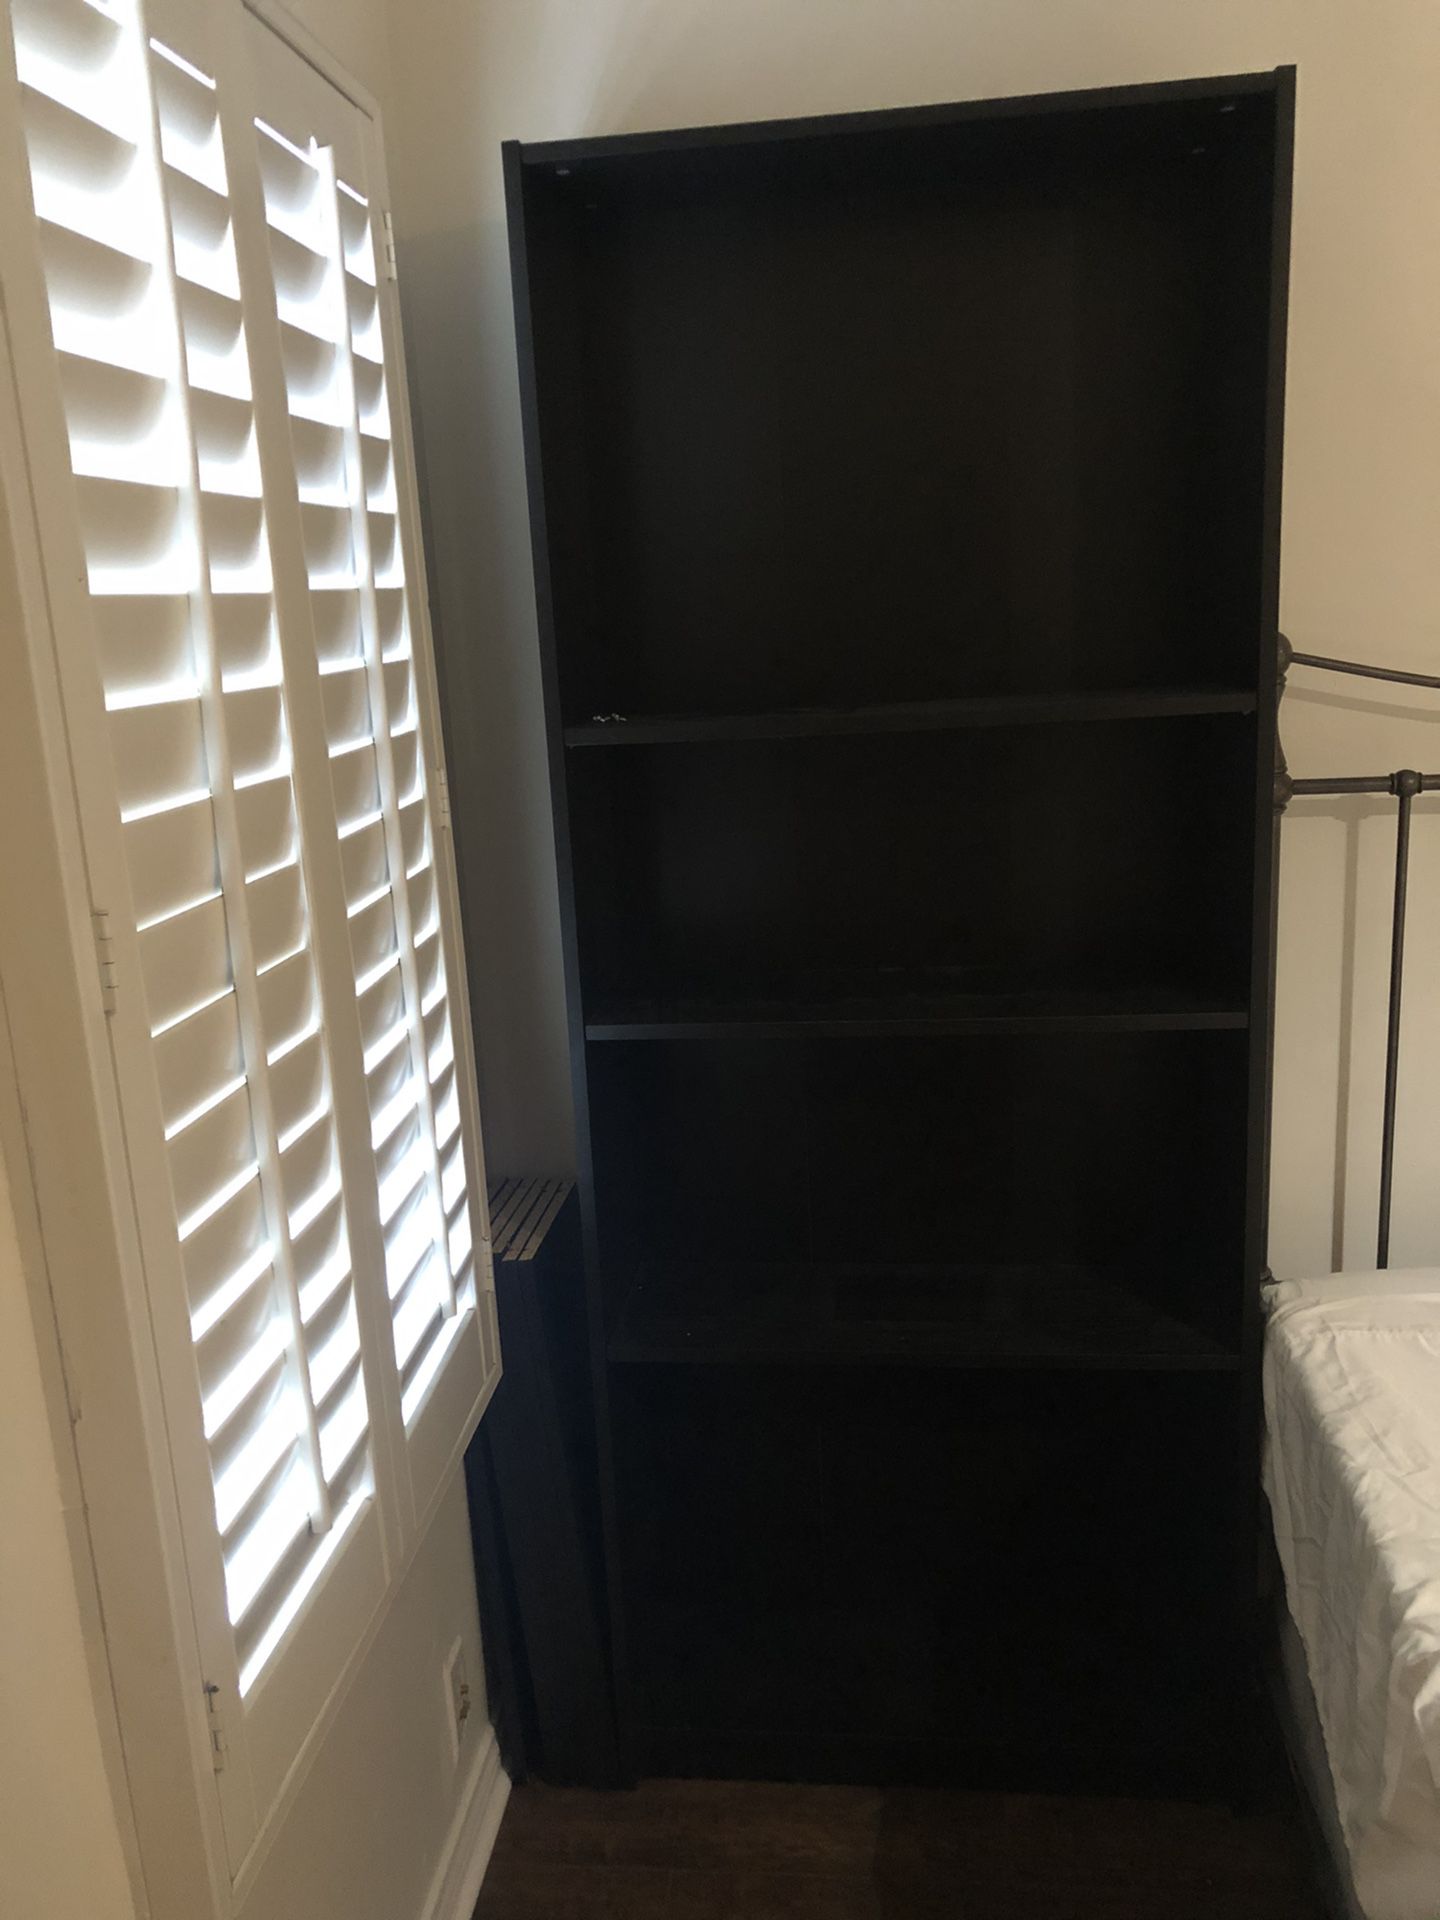 4 Black IKEA Bookshelves ($25 per unit)